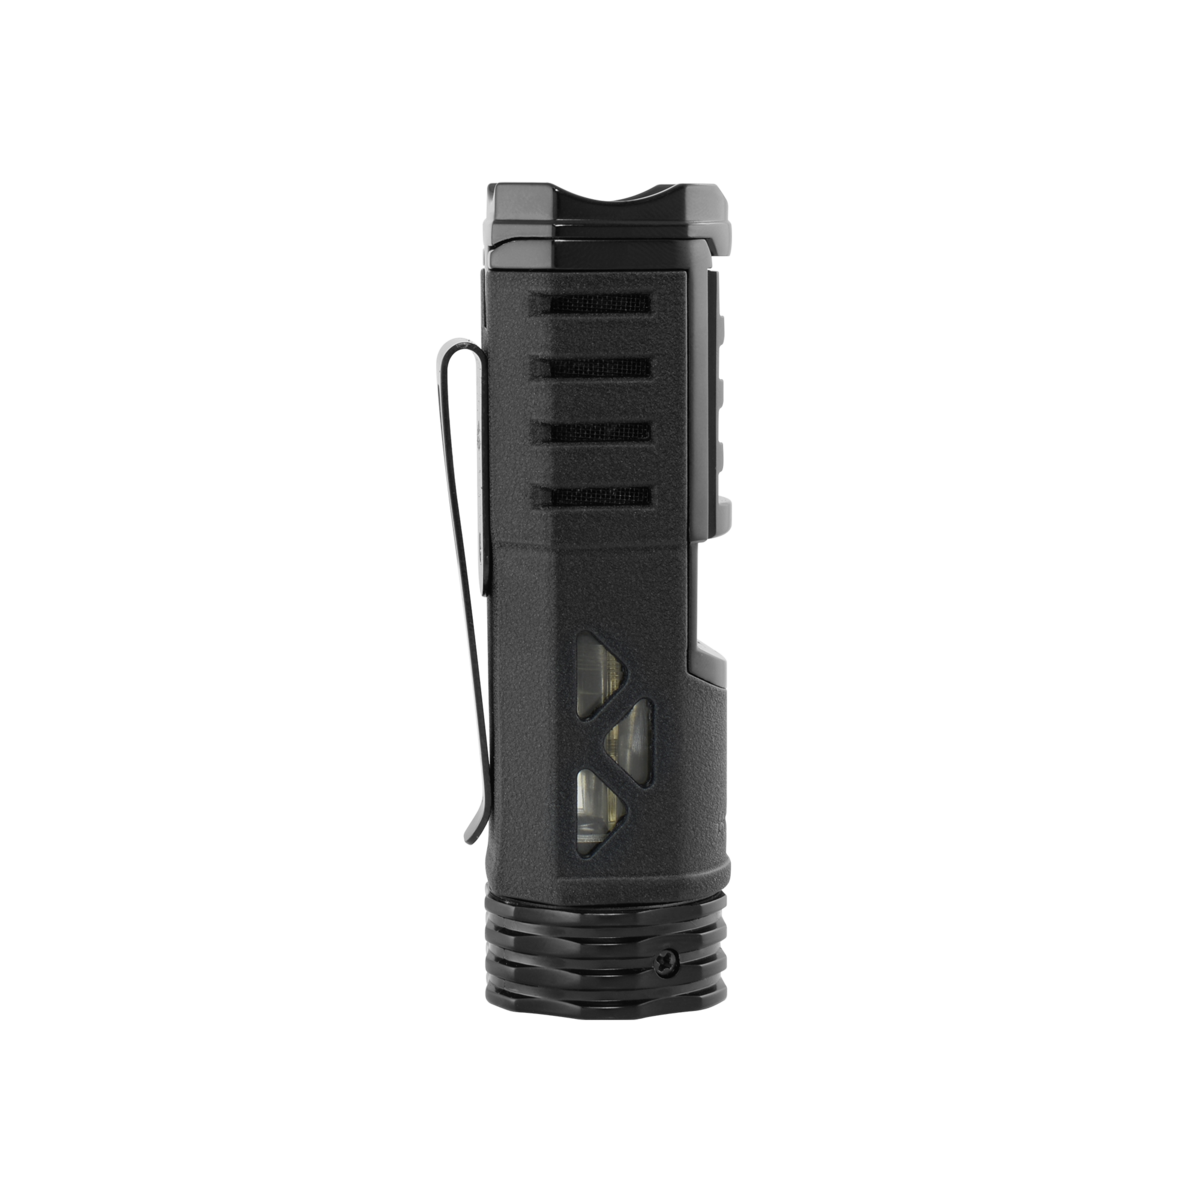 Xikar Tactical Lighter | Single-Jet Flame